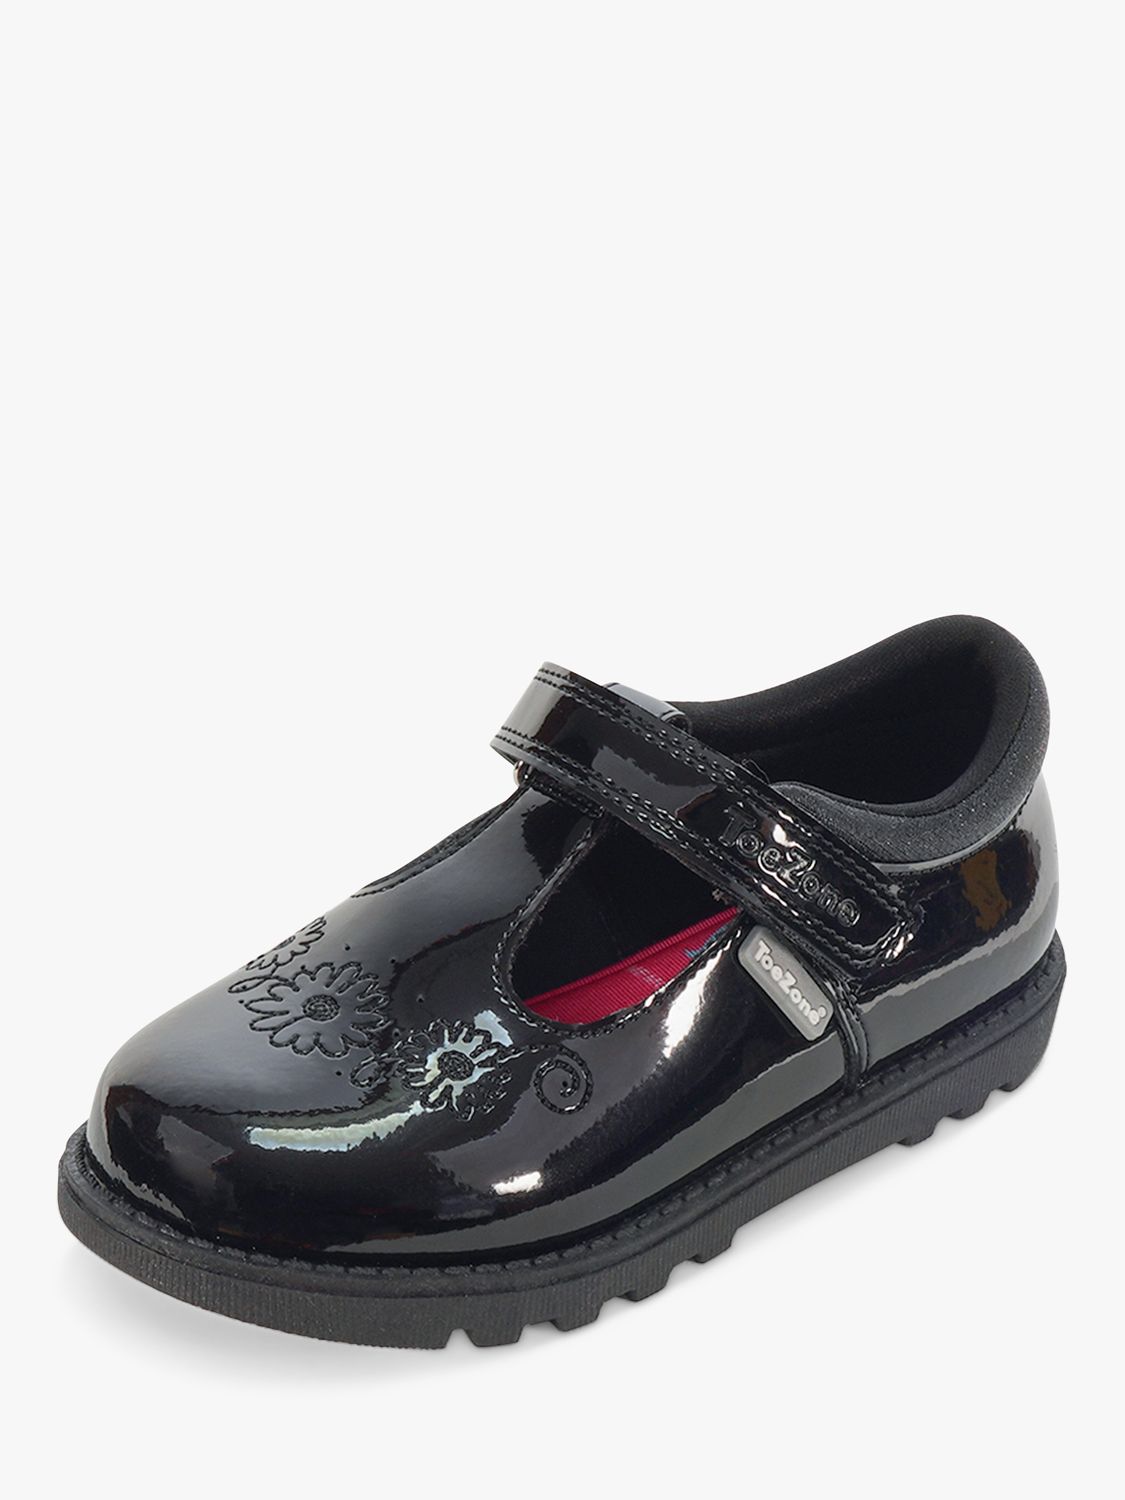 ToeZone Kids' Laura Patent Leather Unicorn School Shoes, Black, 6 Jnr